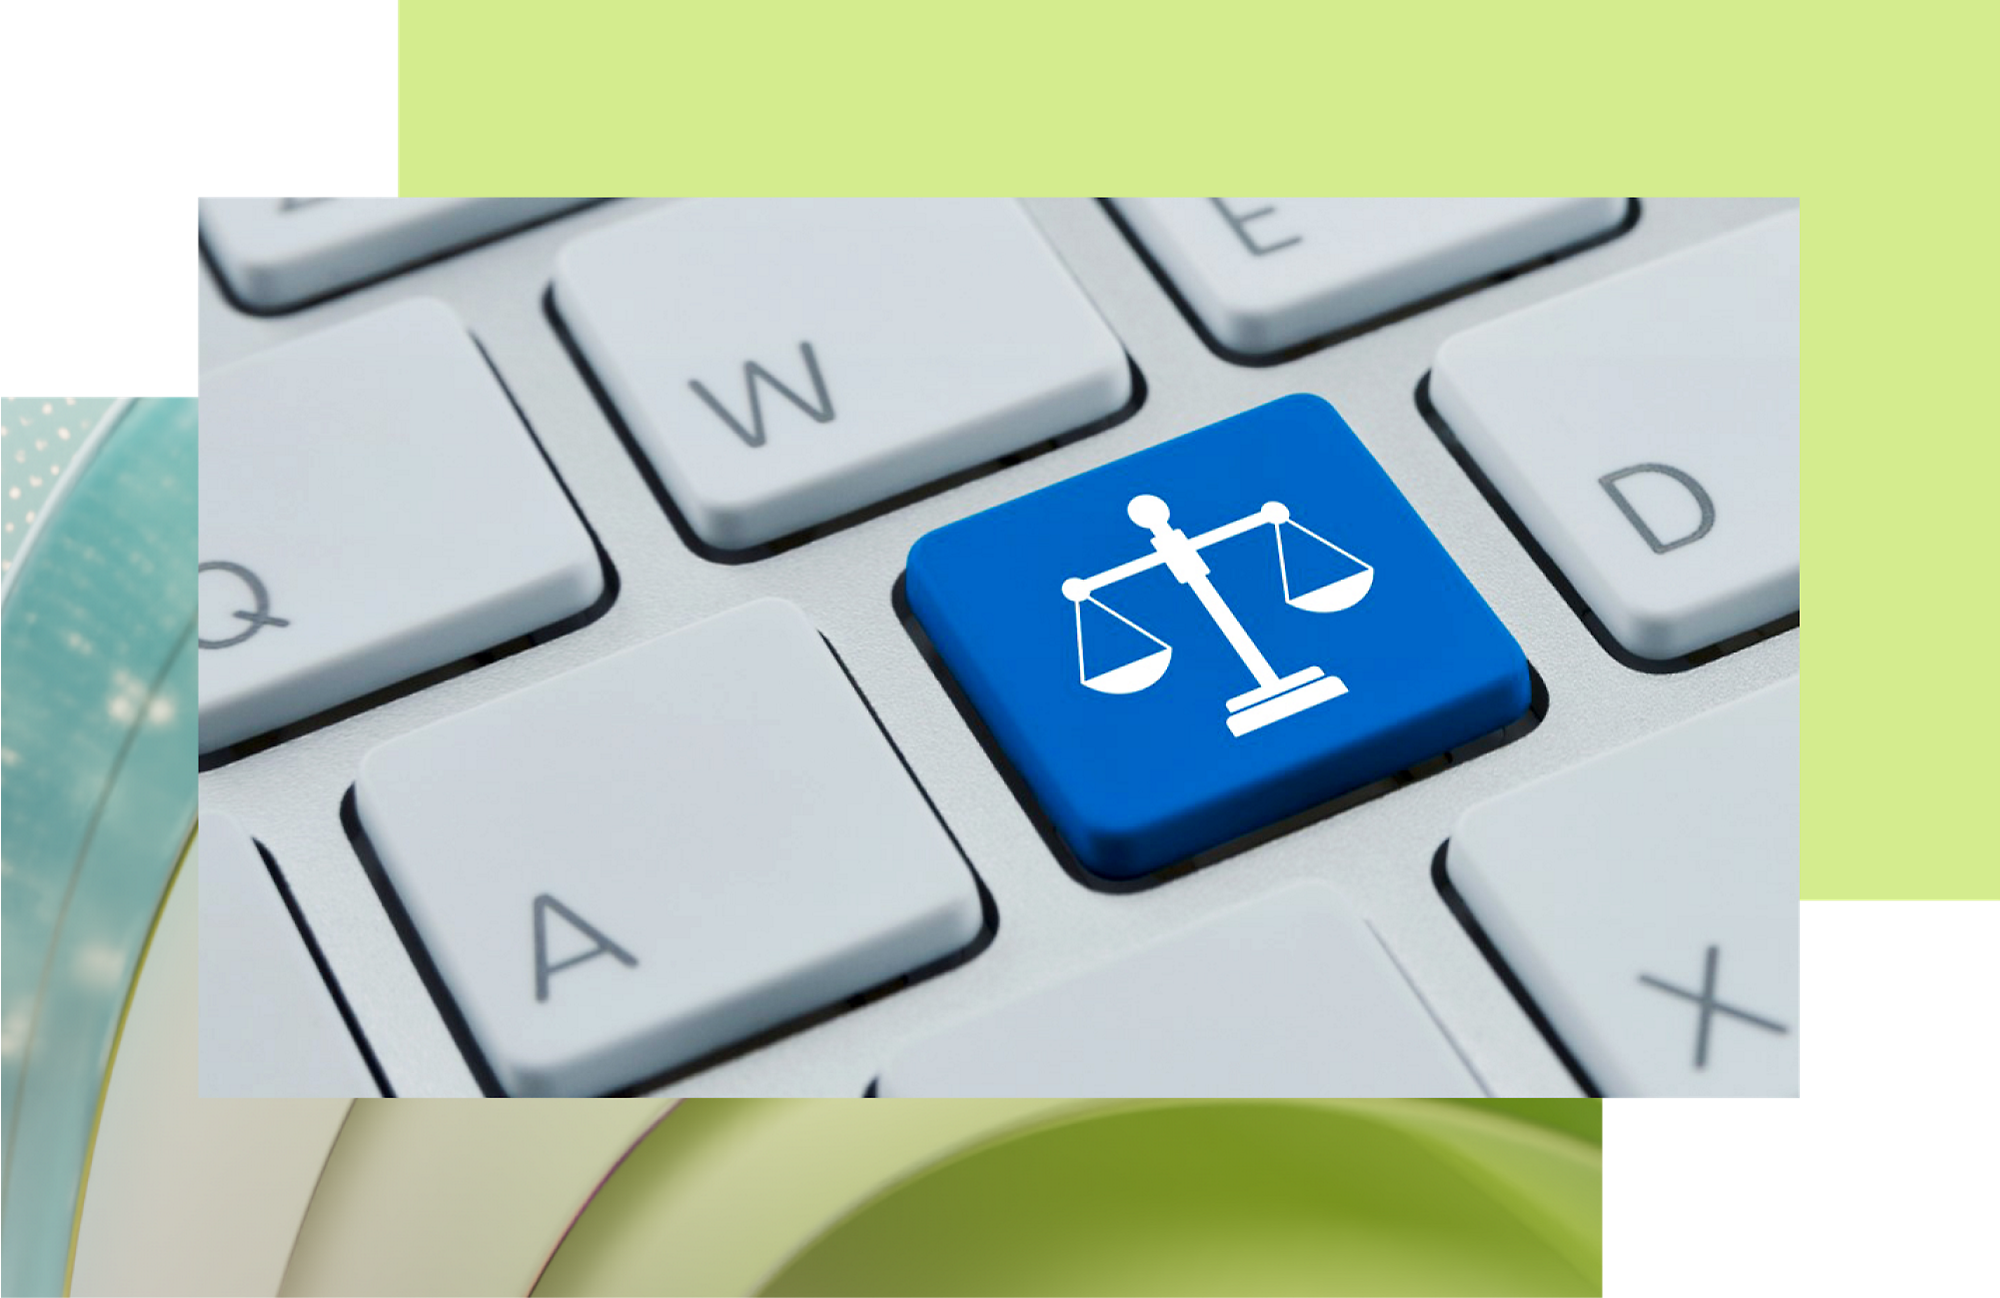 Une icône de clé bleue avec la balance blanche de la justice sur un clavier qui symbolise l’assistance légale ou une technologie axée sur la justice.